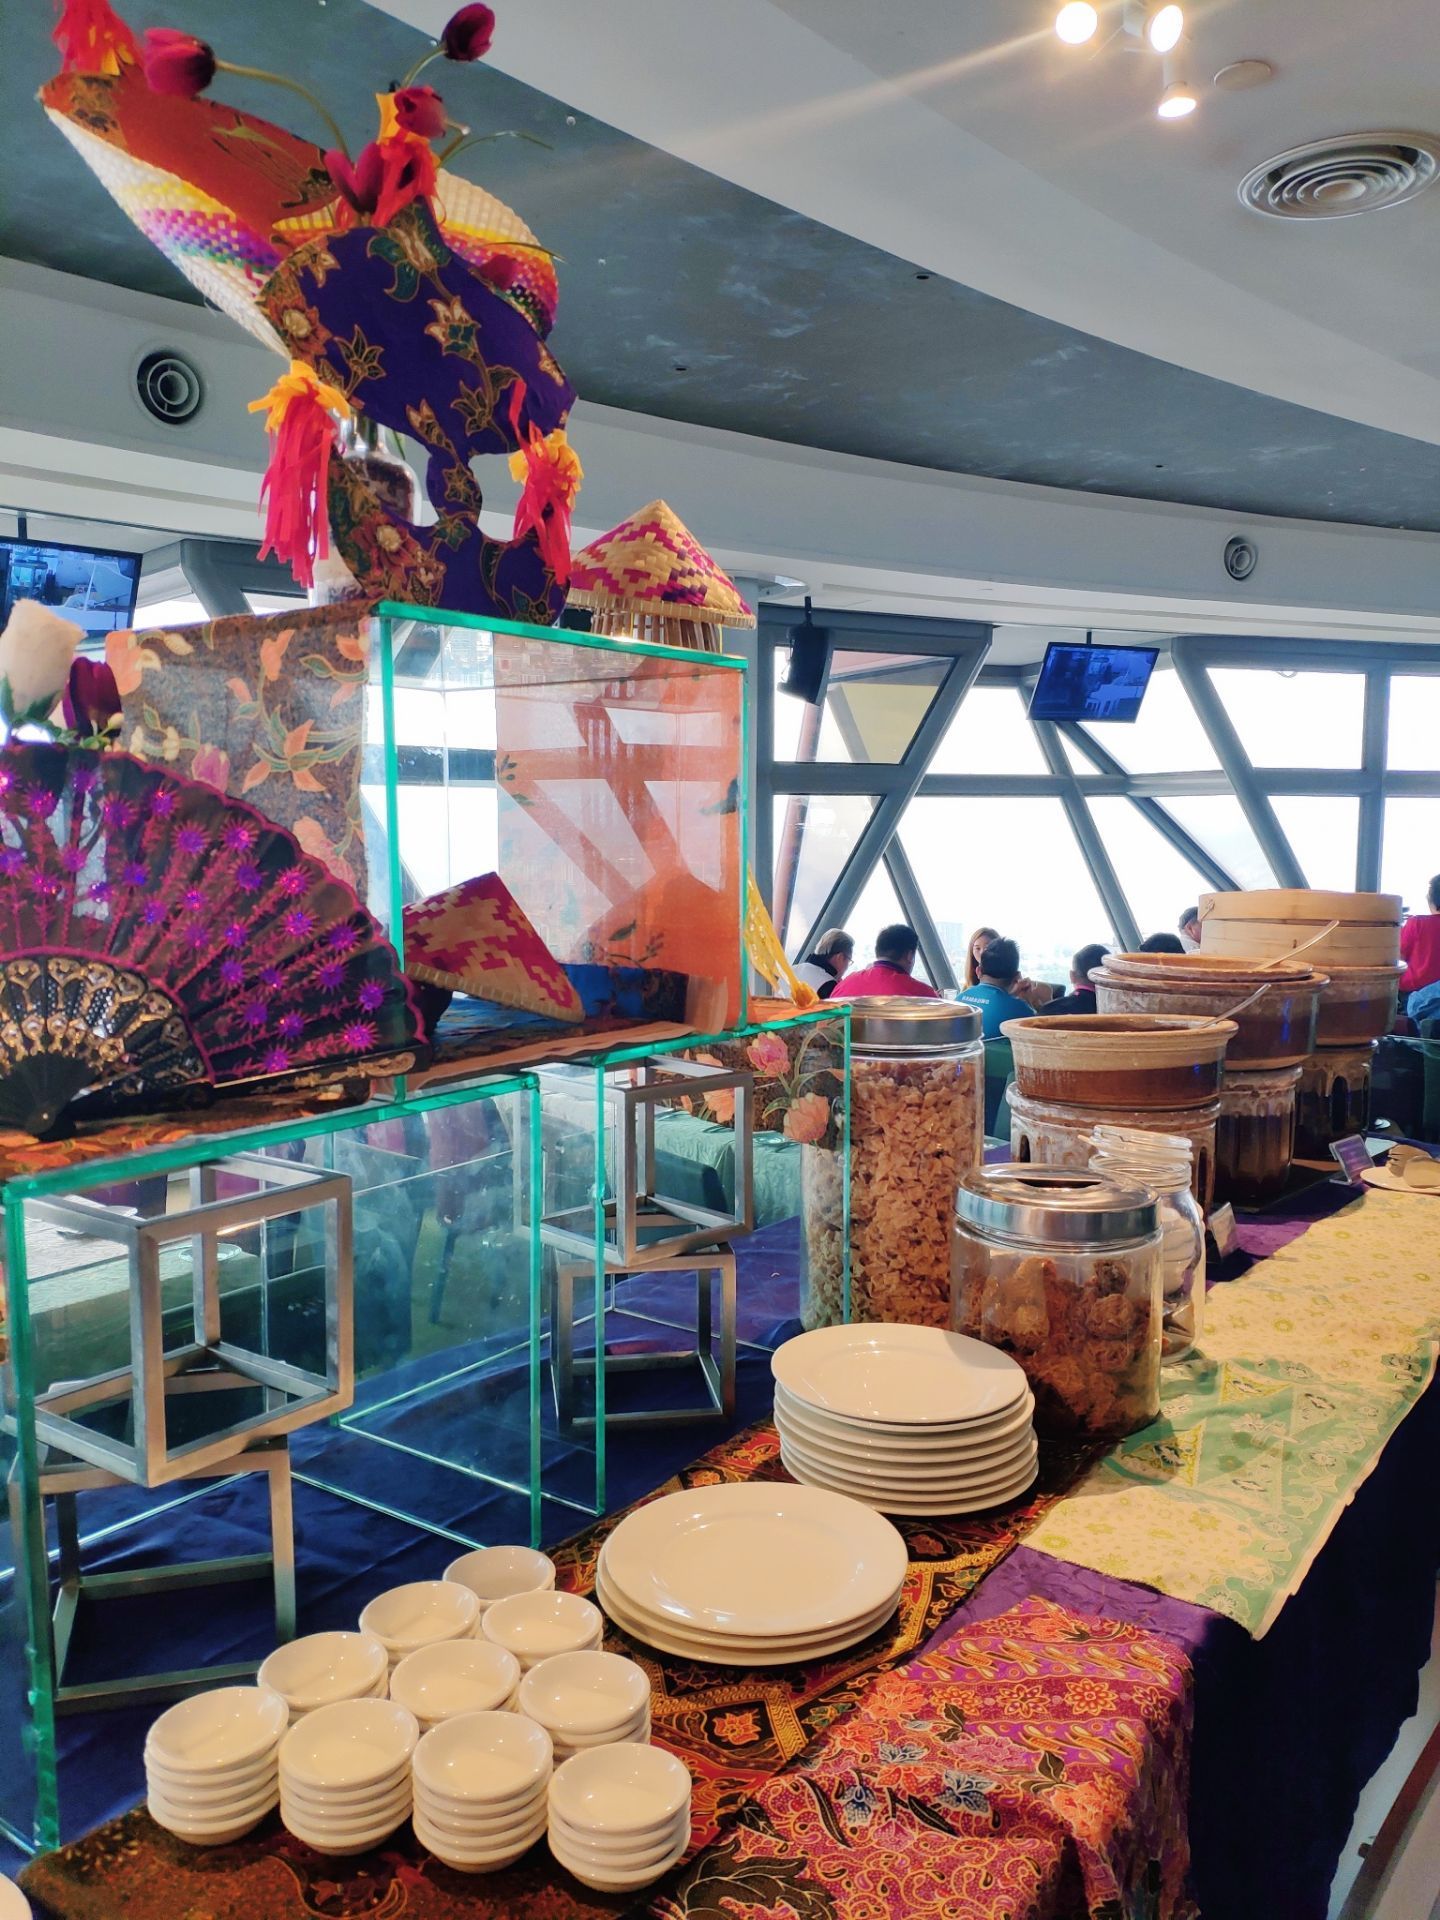 东方明珠·空中旋转餐厅 - 餐厅详情 -上海市文旅推广网-上海市文化和旅游局 提供专业文化和旅游及会展信息资讯